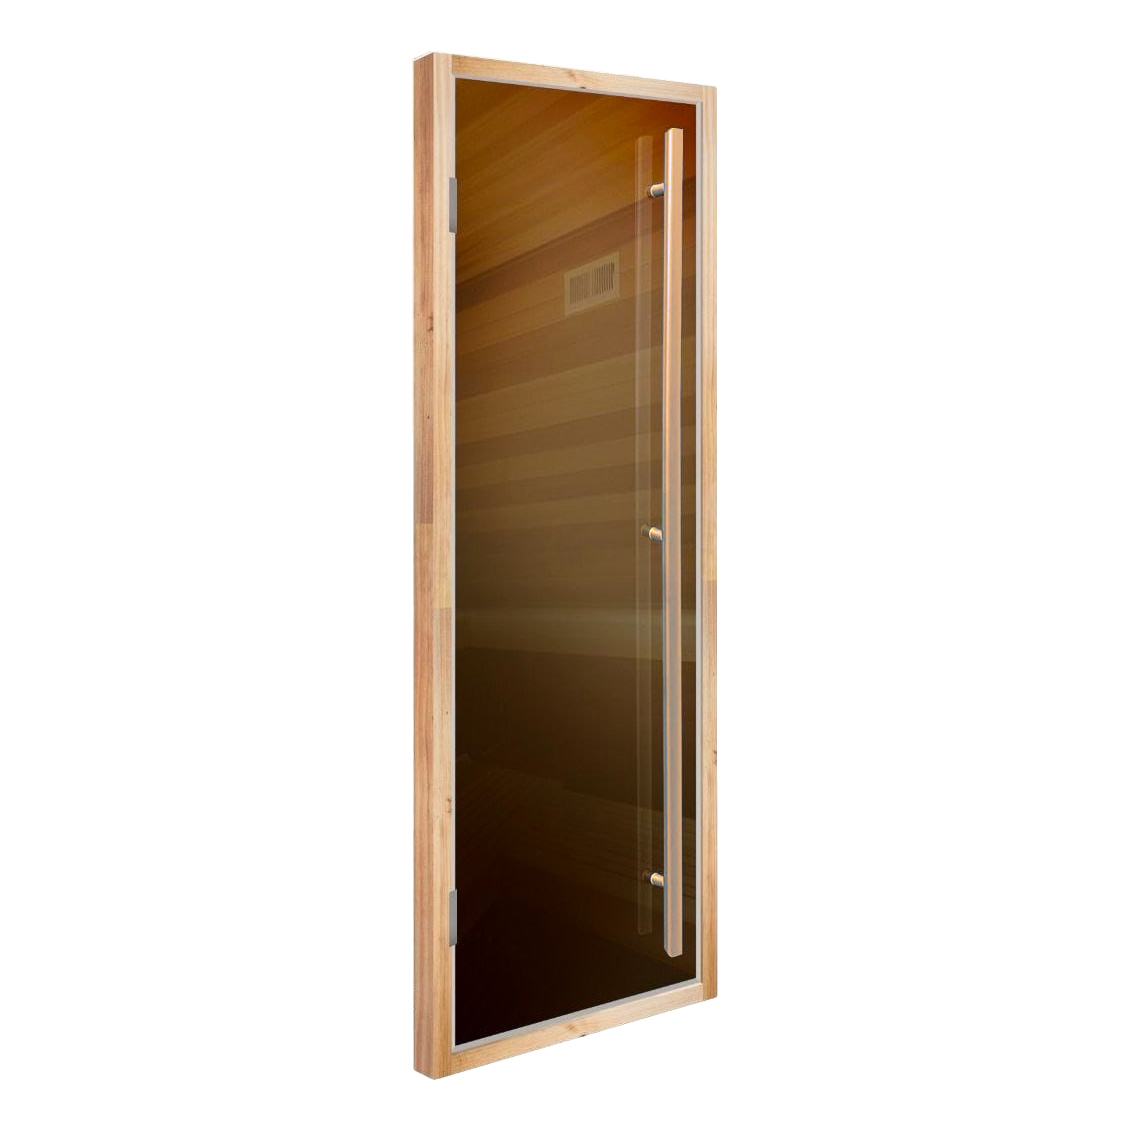 Дверь для сауны, со скрытыми петлями, DoorWood Flash Royal, бронза, 2000*800